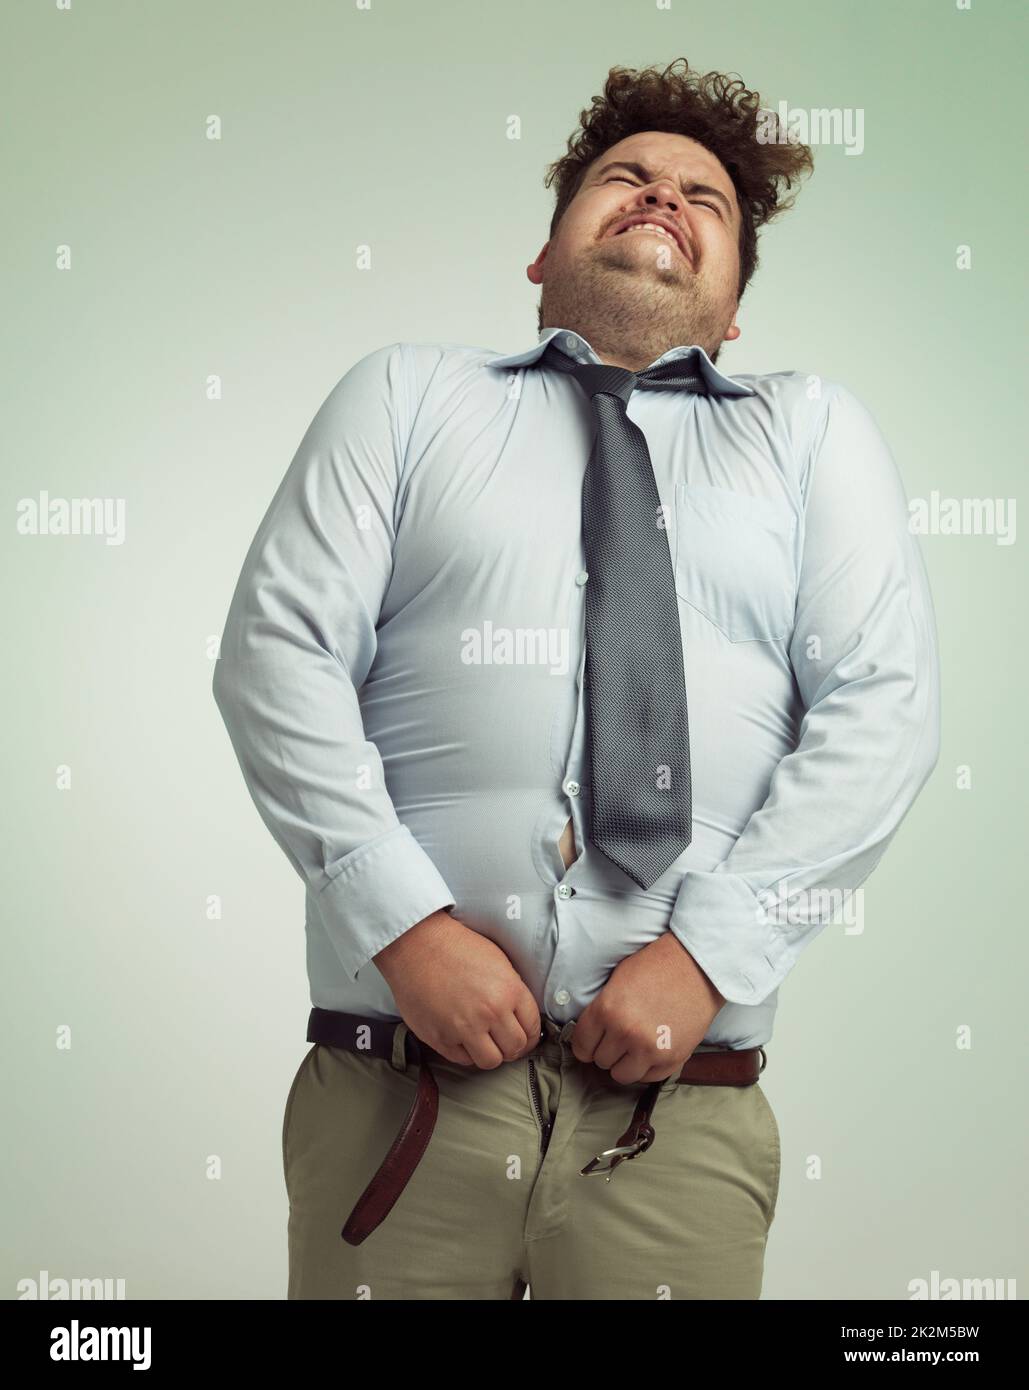 Volendo i suoi pantaloni chiusi. Humorous studio girato di un uomo d'affari overweight che prova a premere i suoi pantaloni. Foto Stock